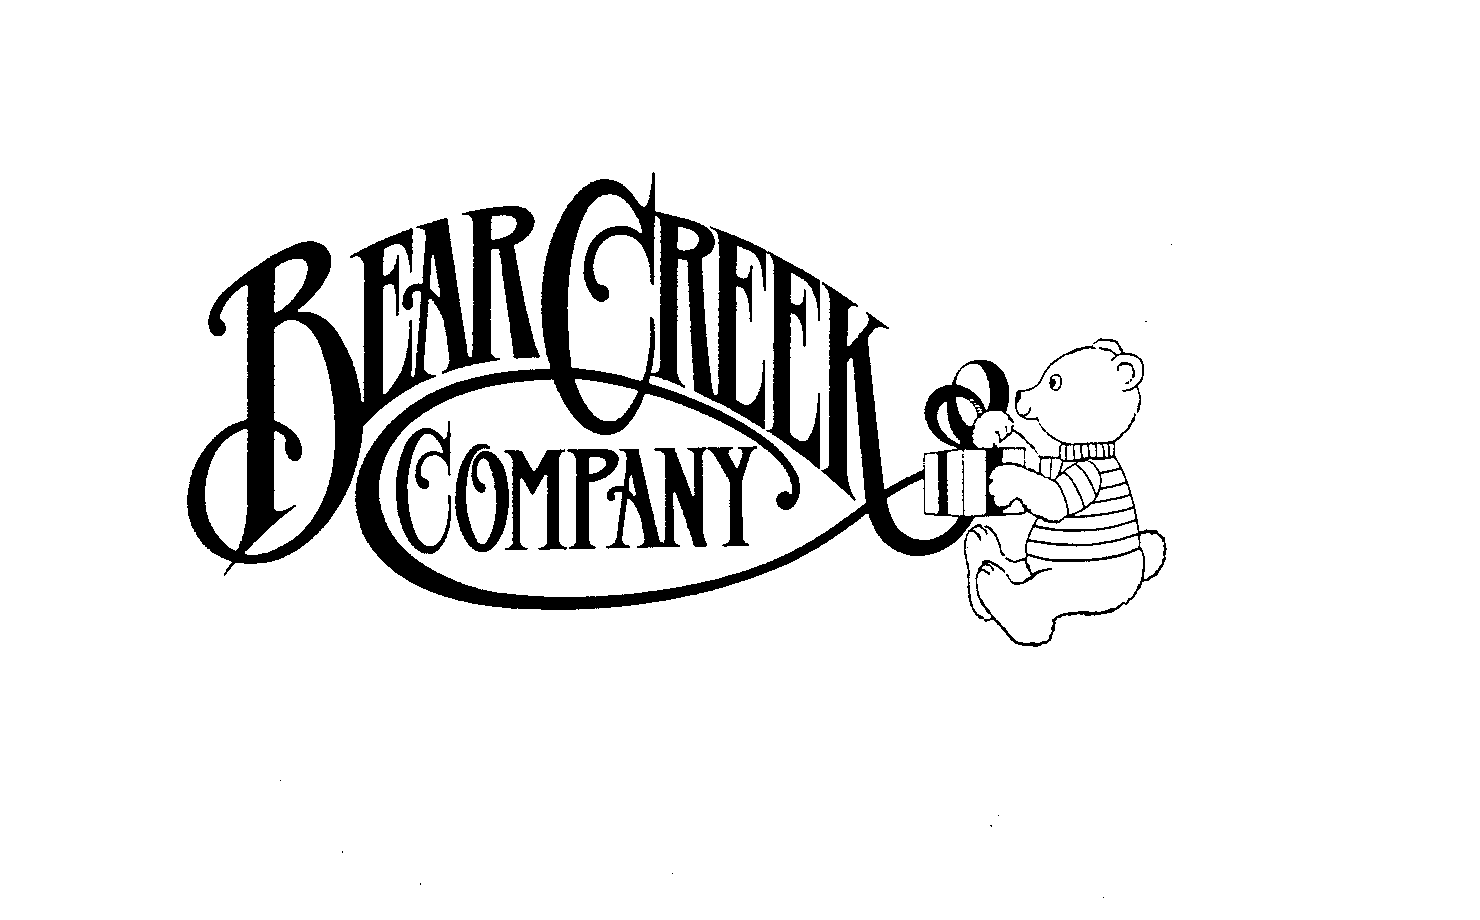  BEAR CREEK COMPANY